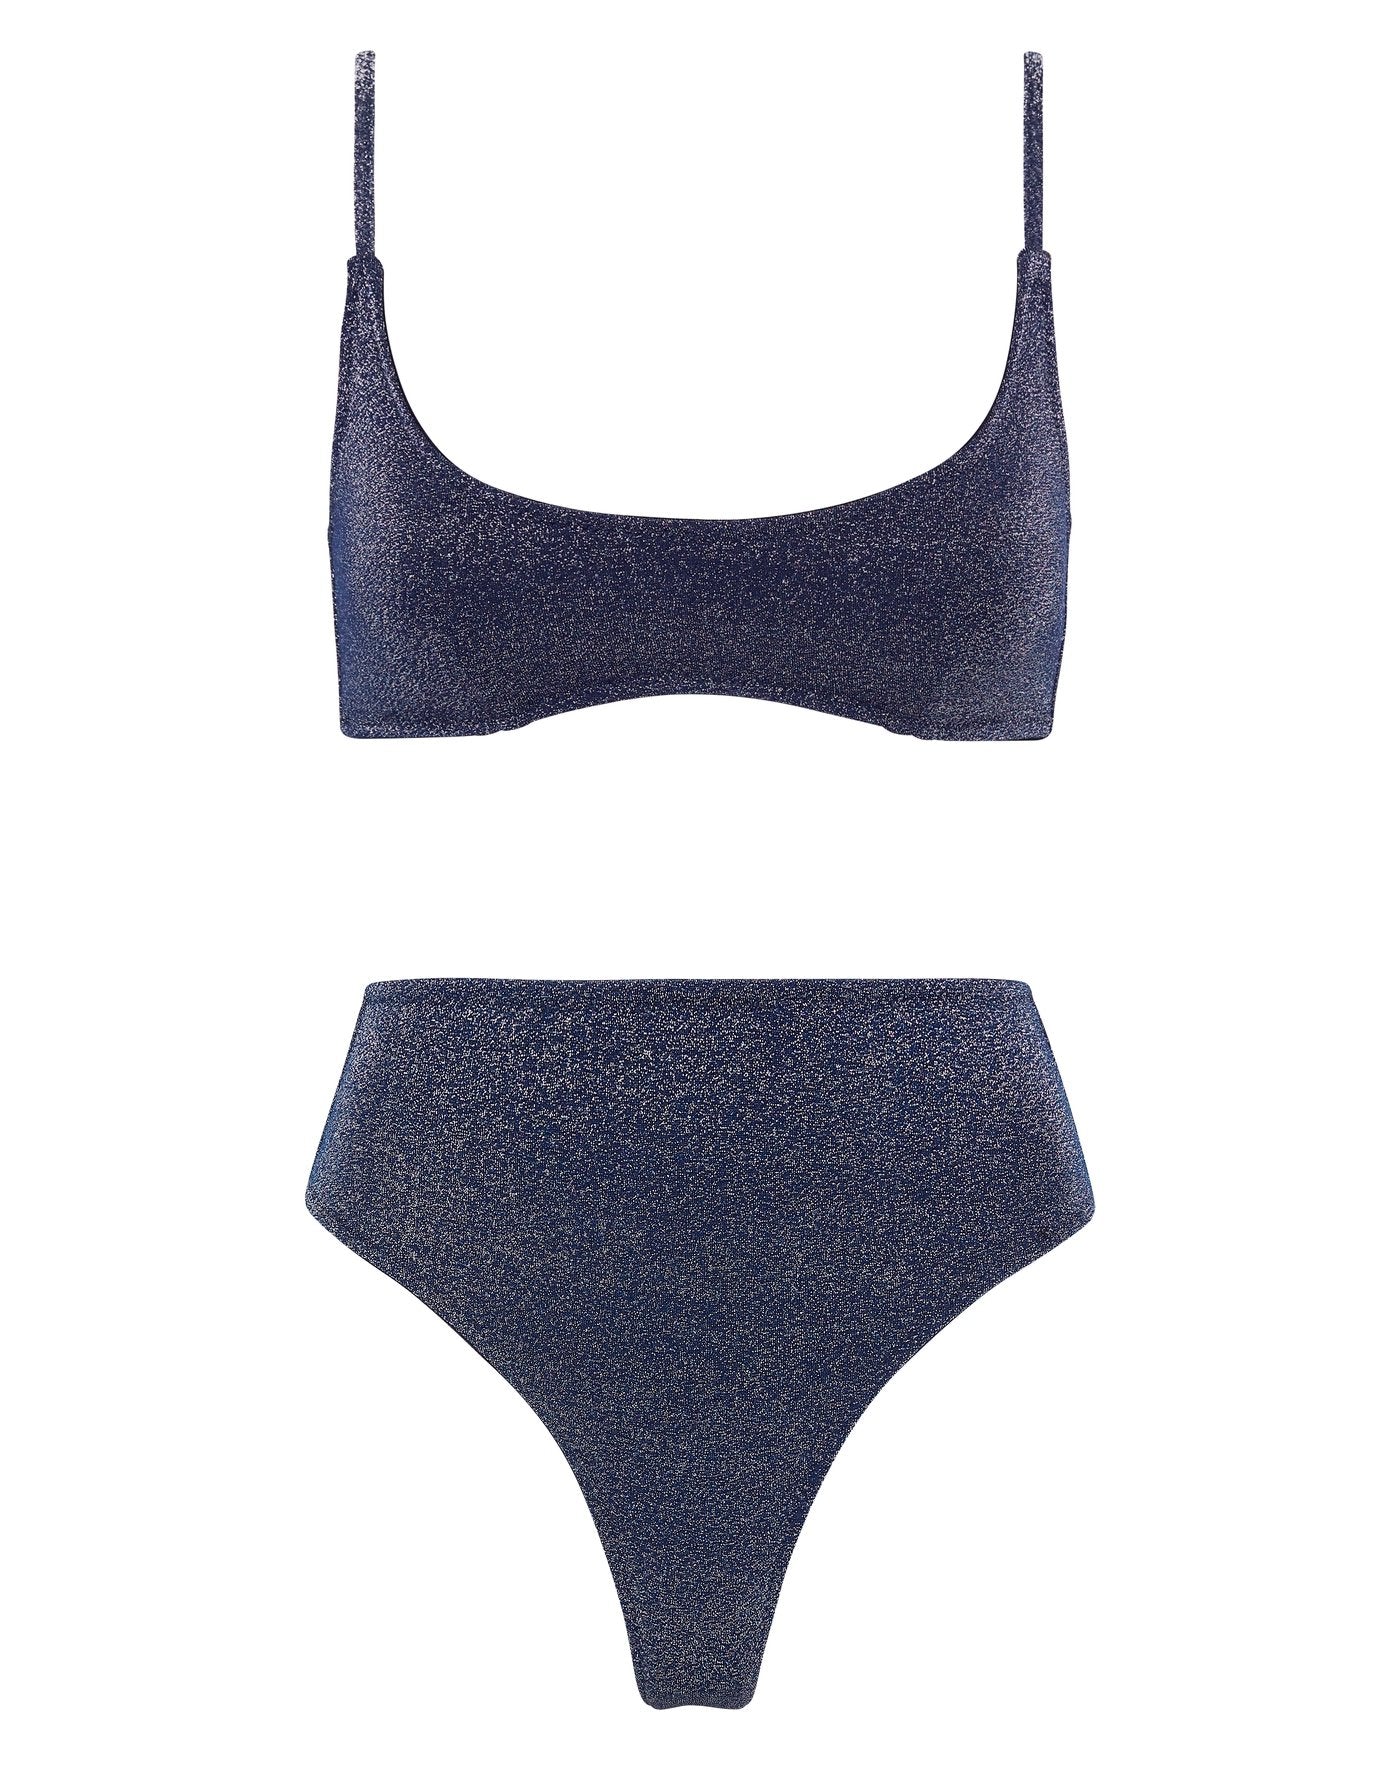 triangl swimwear, Swim, Triangl Bikini Top In Size Small Navy Blue Sparkle